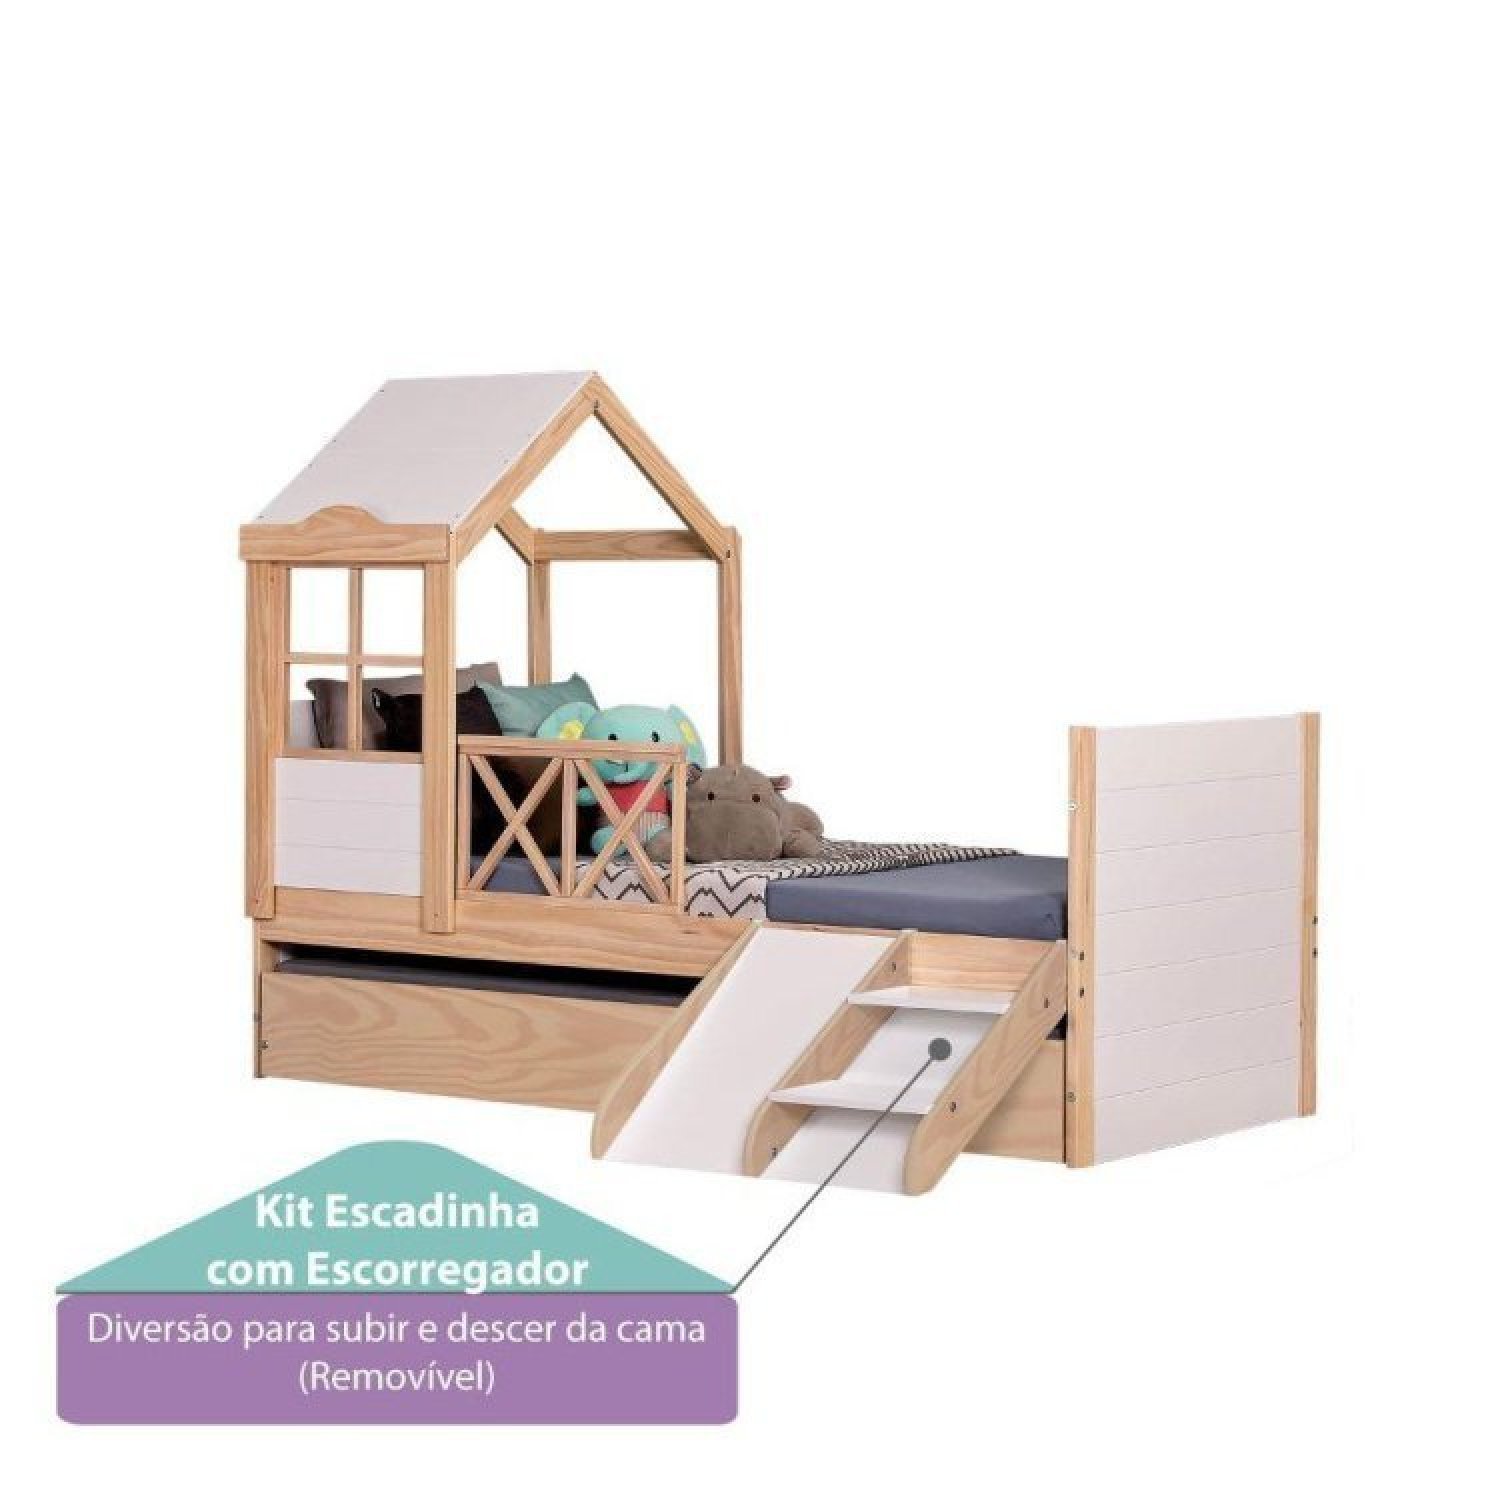 Bicama Solteiro Infantil Garden com Telhado Plus e Kit Escadinha Casatema - 6